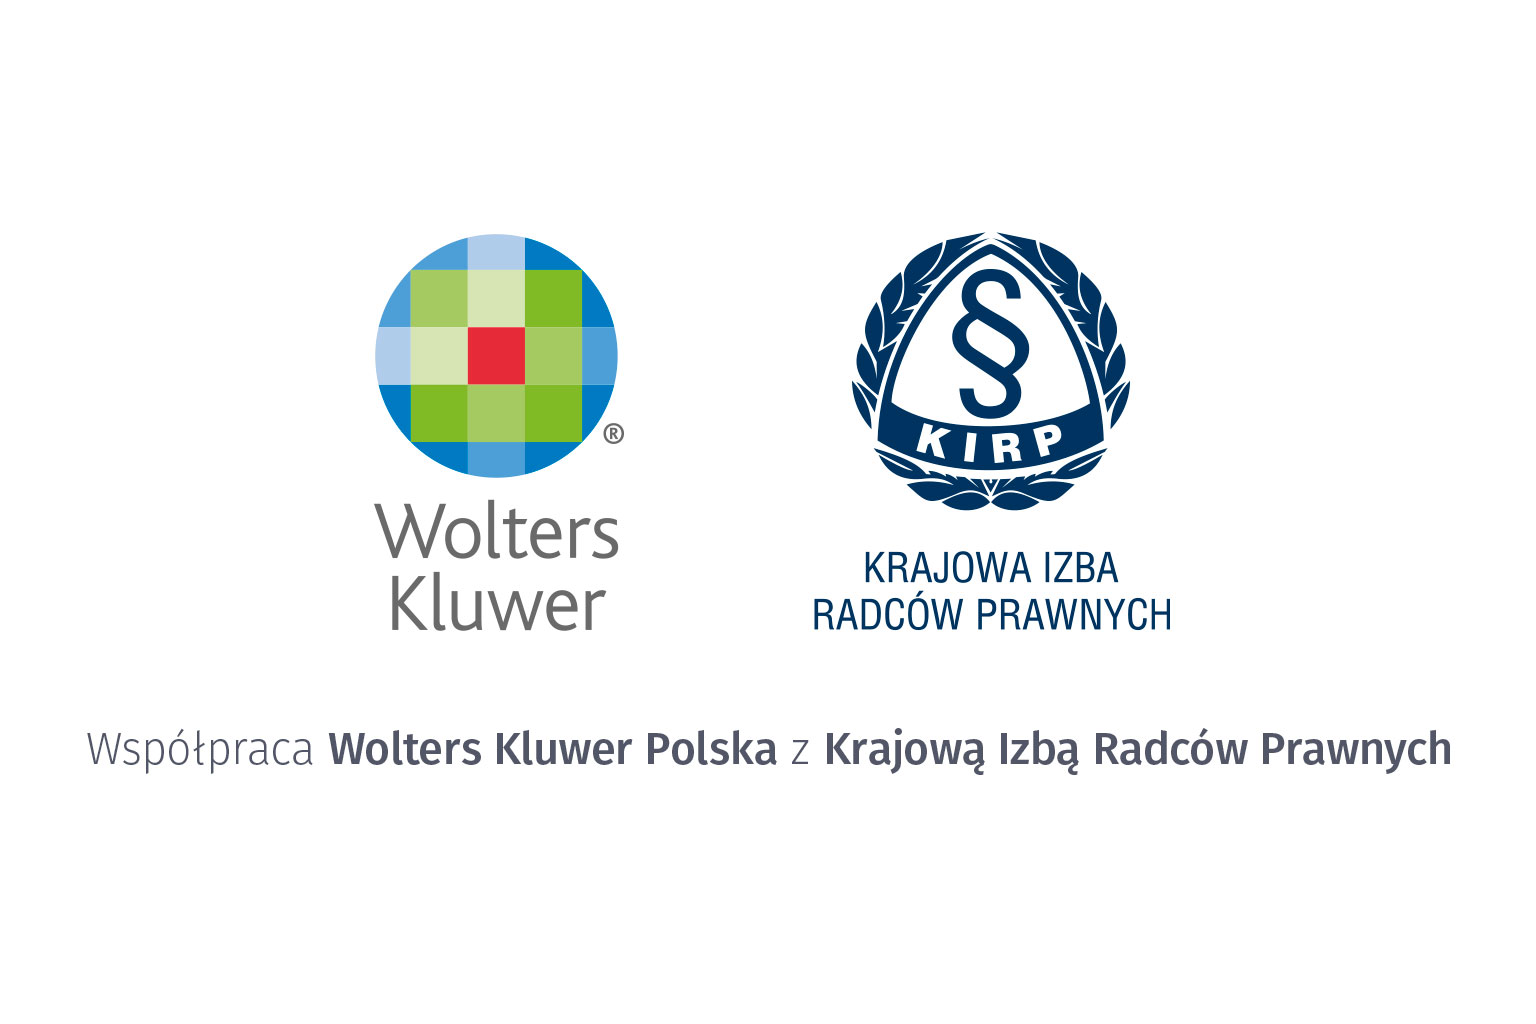 Krajowa Izba Radców Prawnych i Wolters Kluwer Polska kontynuują współpracę w obszarze nowoczesnych technologii oraz profesjonalnych rozwiązań dla środowiska radcowskiego